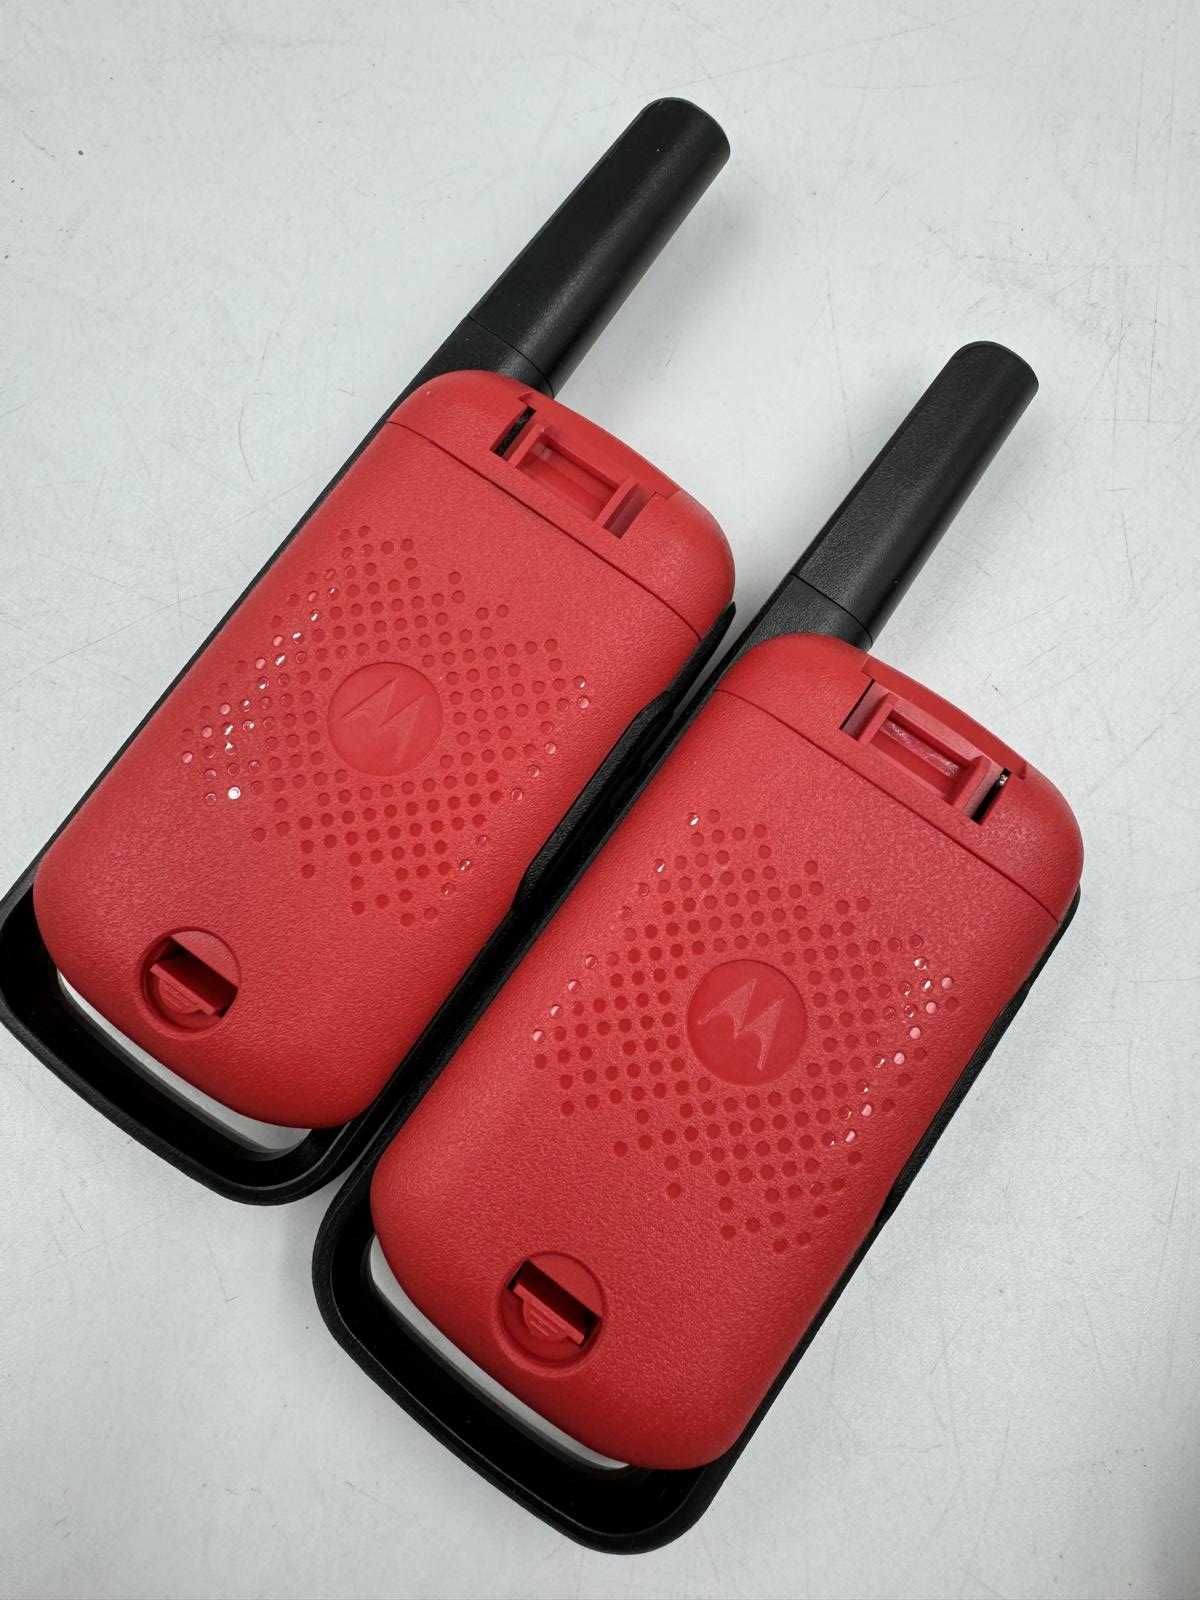 Krótkofalówki Motorola T42 czerwone 2 sztuki